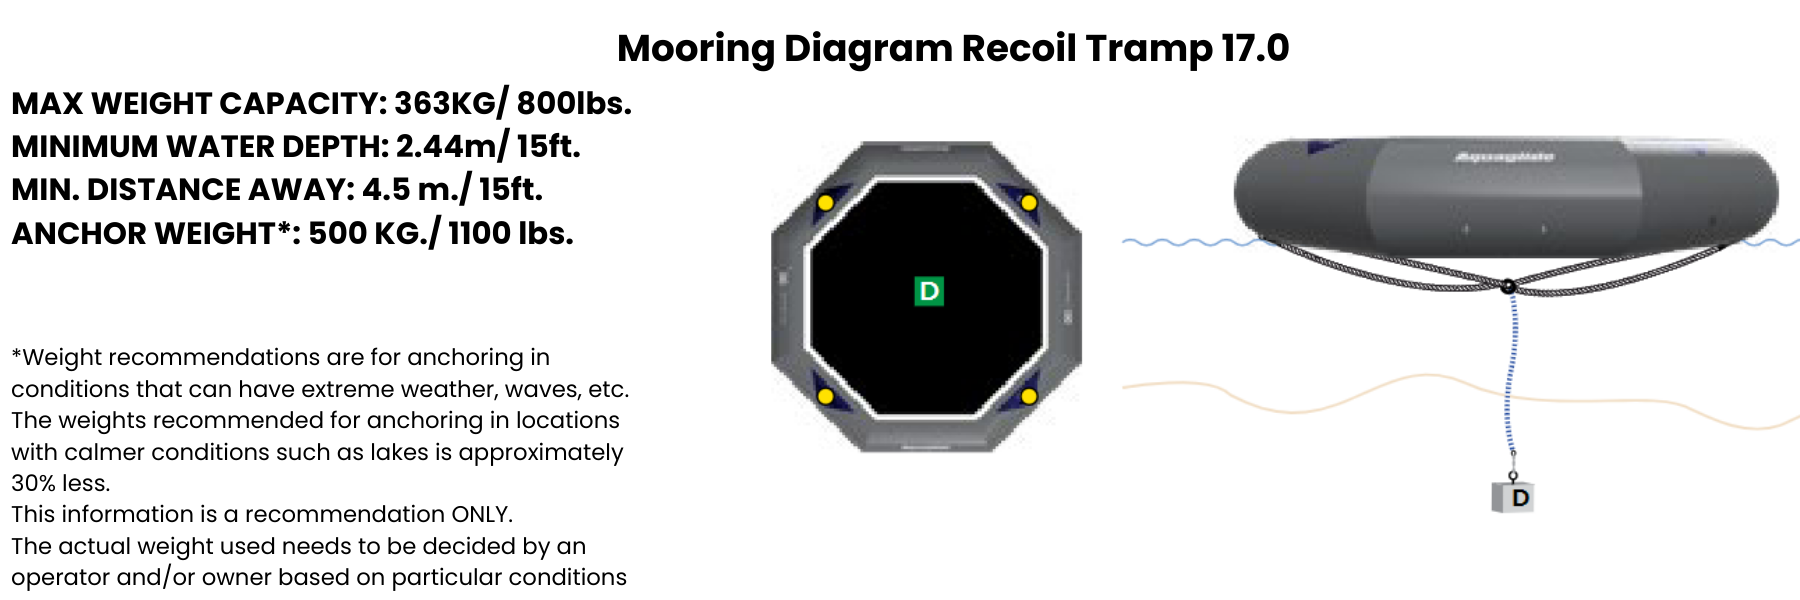 Mooring Diagram Recoil Tramp 17.0